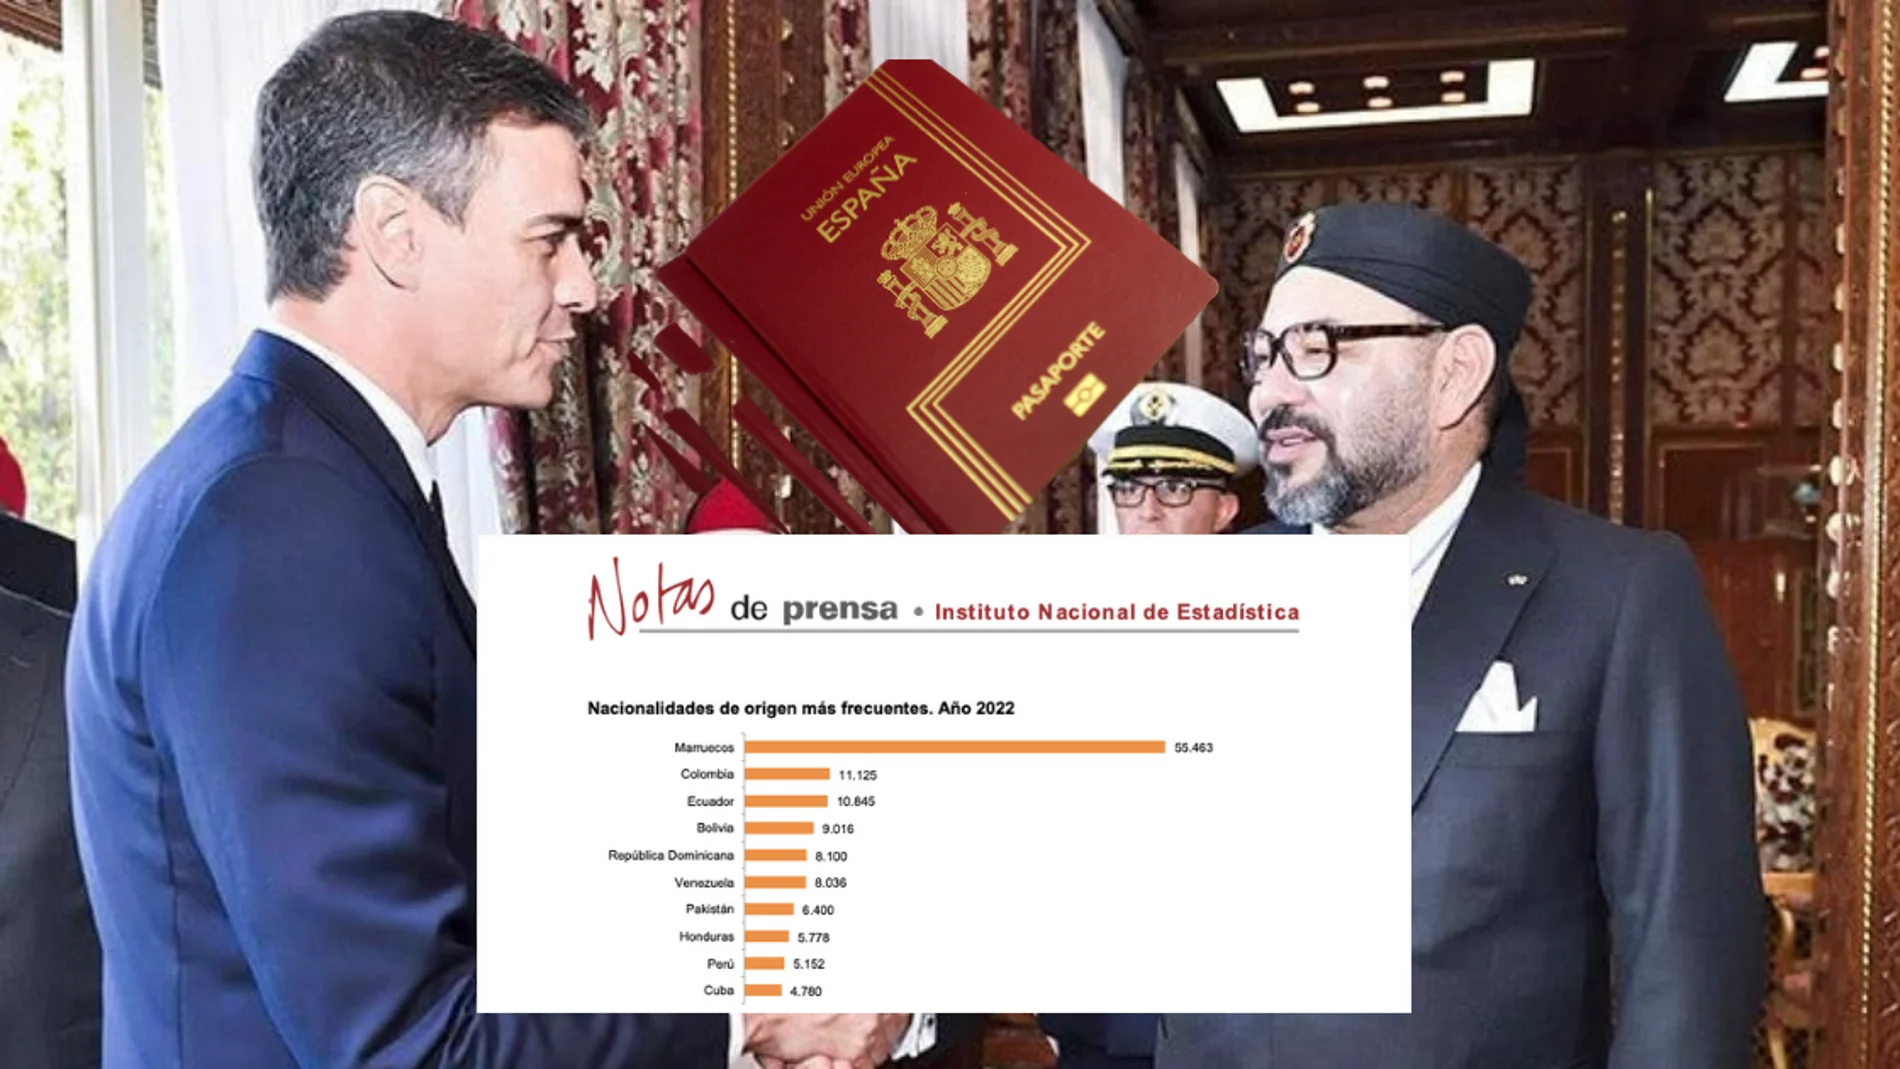 En el montaje, imágenes de la nota de prensa del INE sobre nacionalidades concedidas en 2022 y, de fondo, Pedro Sánchez saludando a Mohamed VI durante su visita oficial a Marruecos